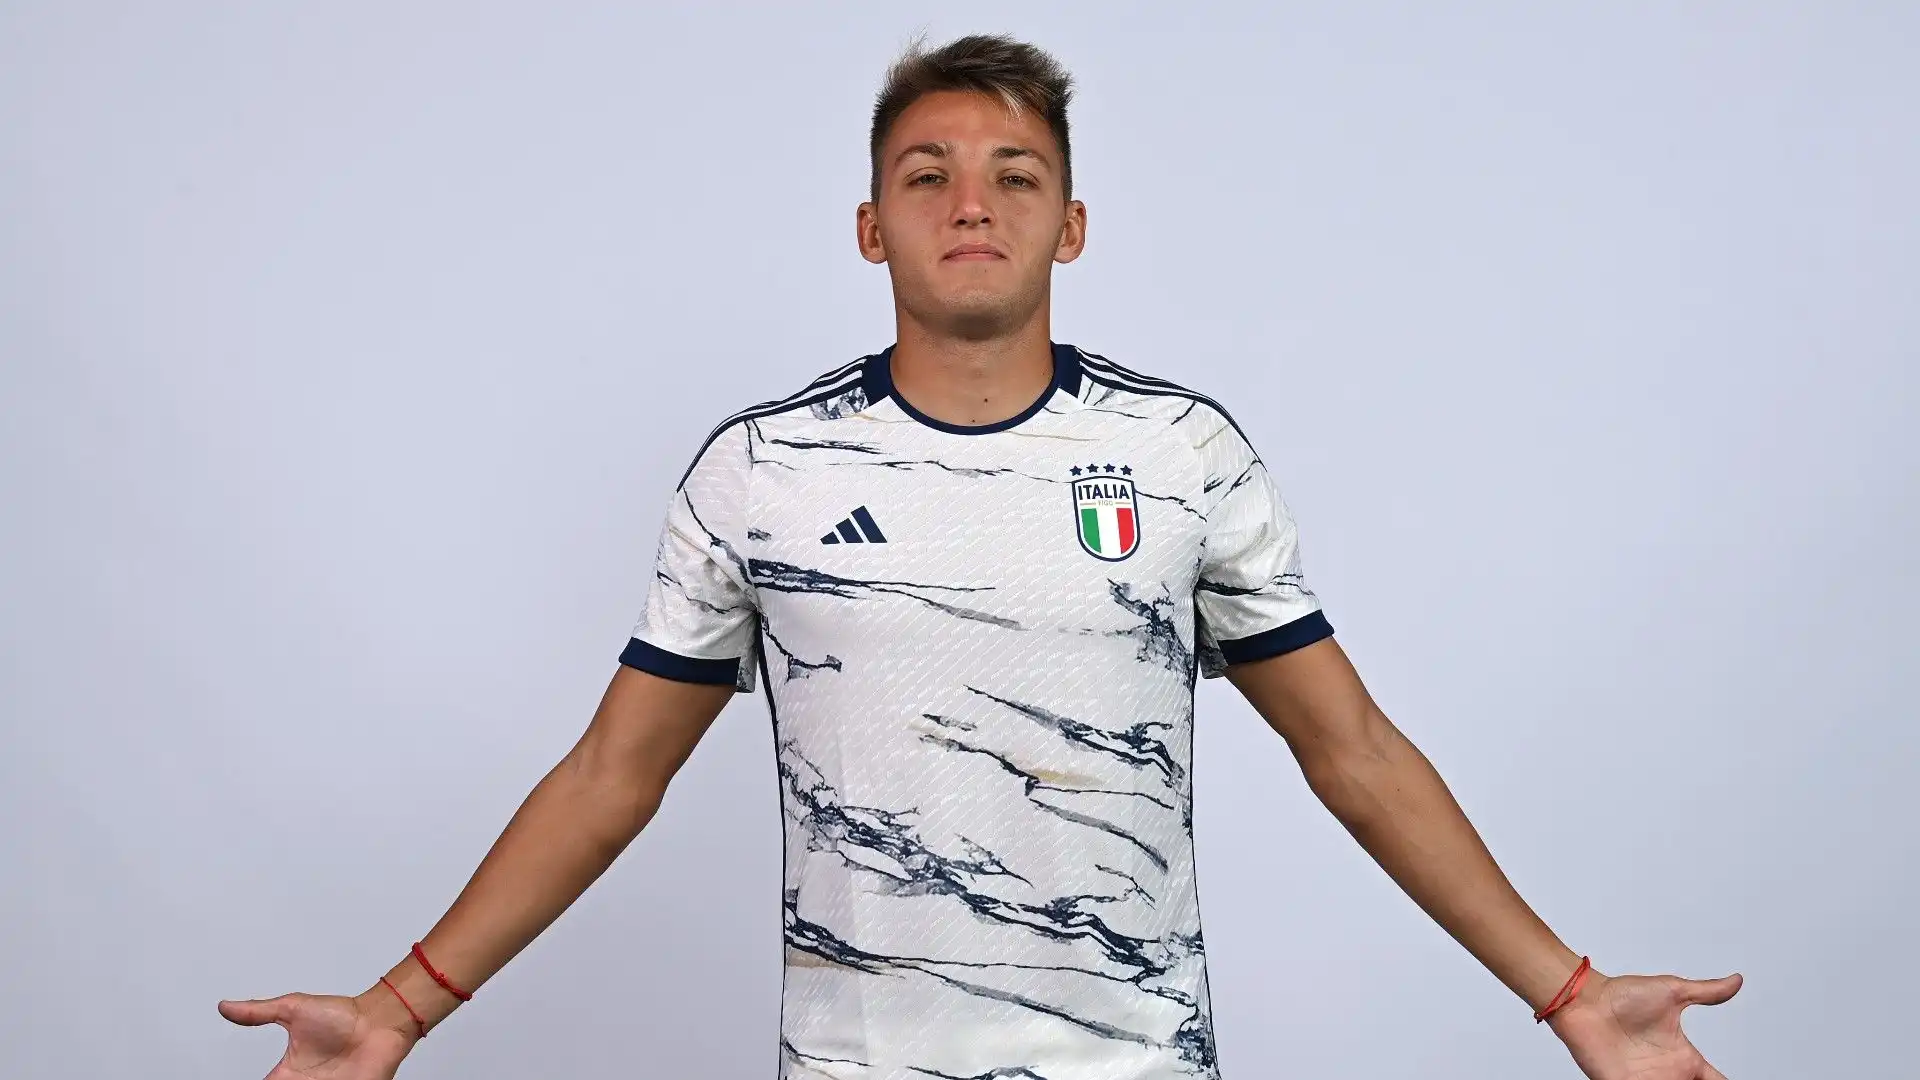 Ecco il calciatore mentre posa per i fotografi con la nuova maglietta dell'Italia